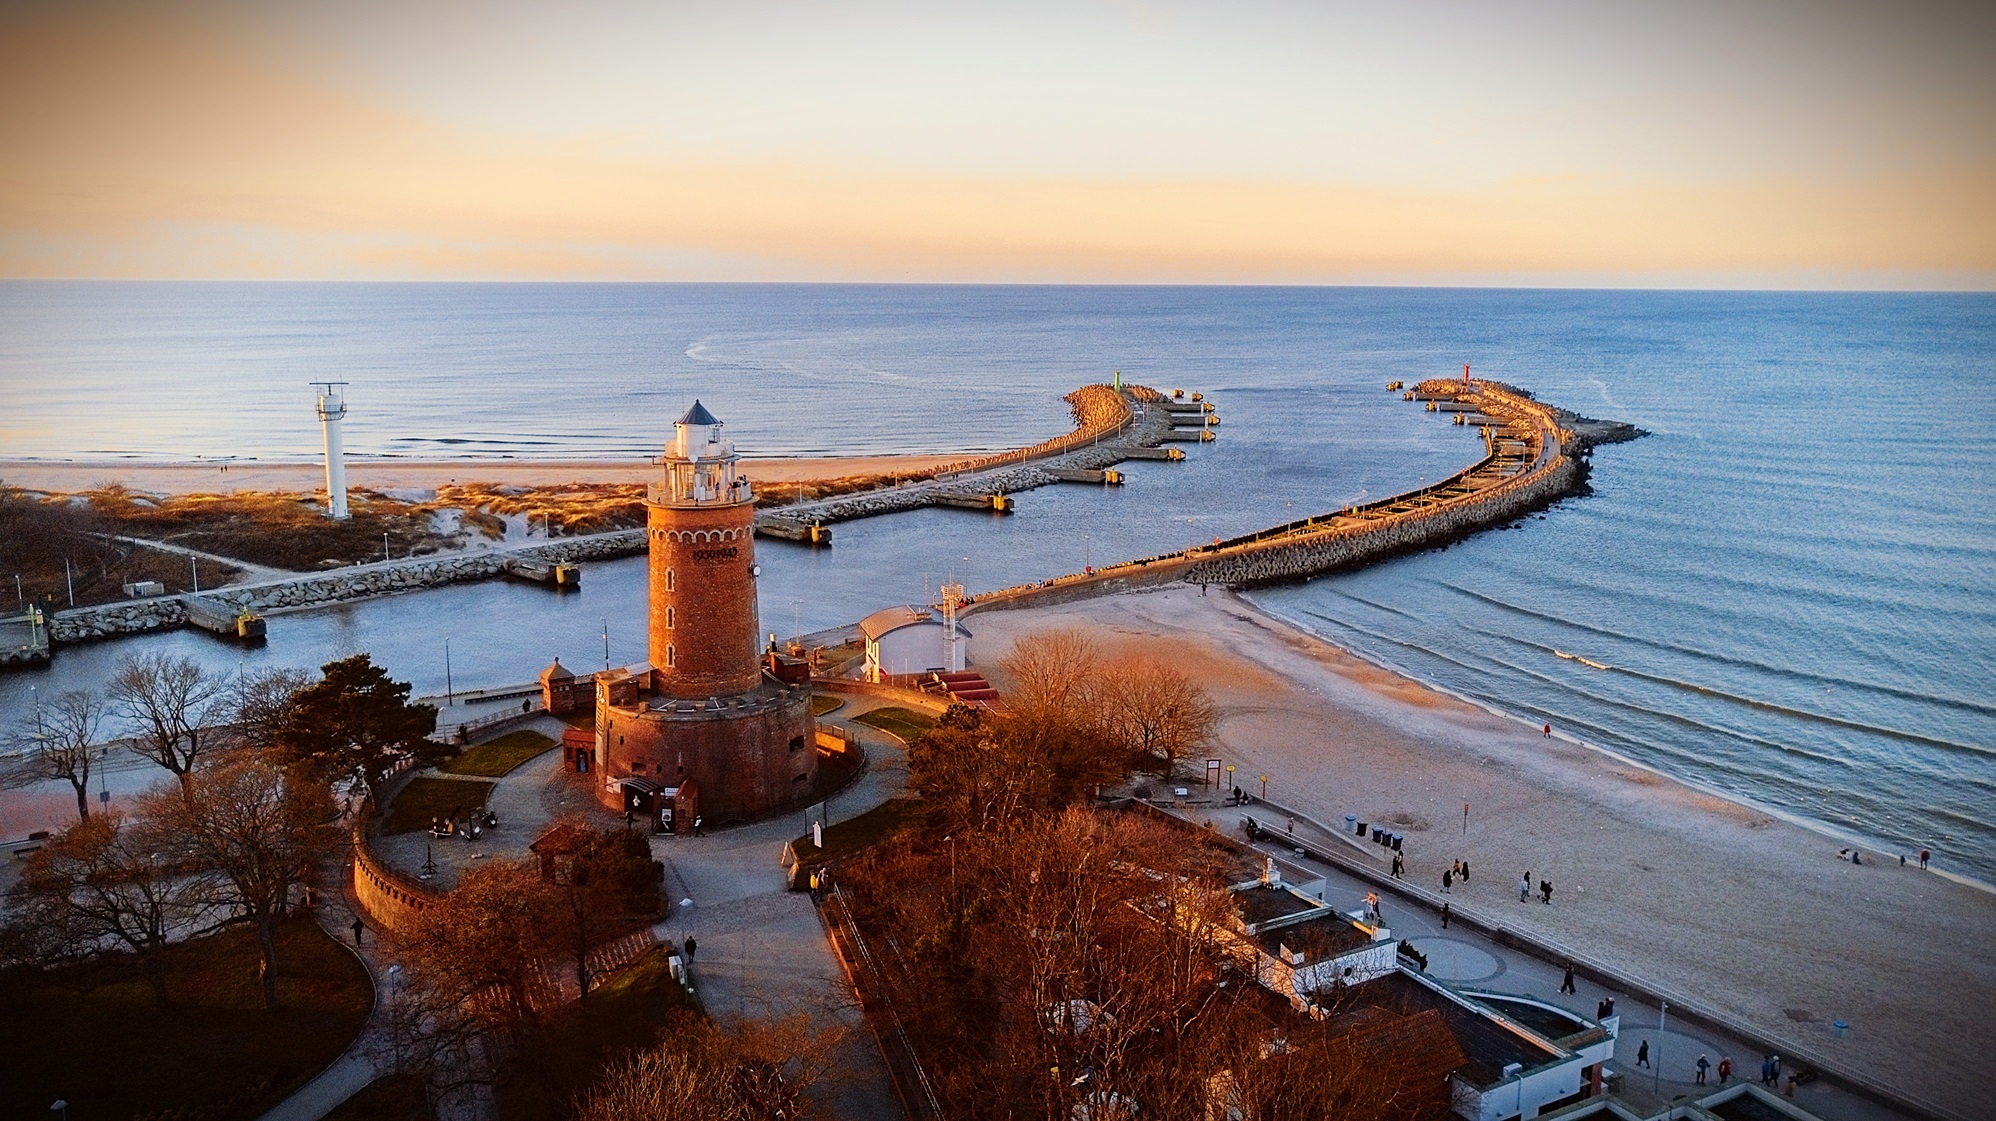 Apartamenty nad morzem – widok na plażę i latarnię morską w Kołobrzegu jesienią